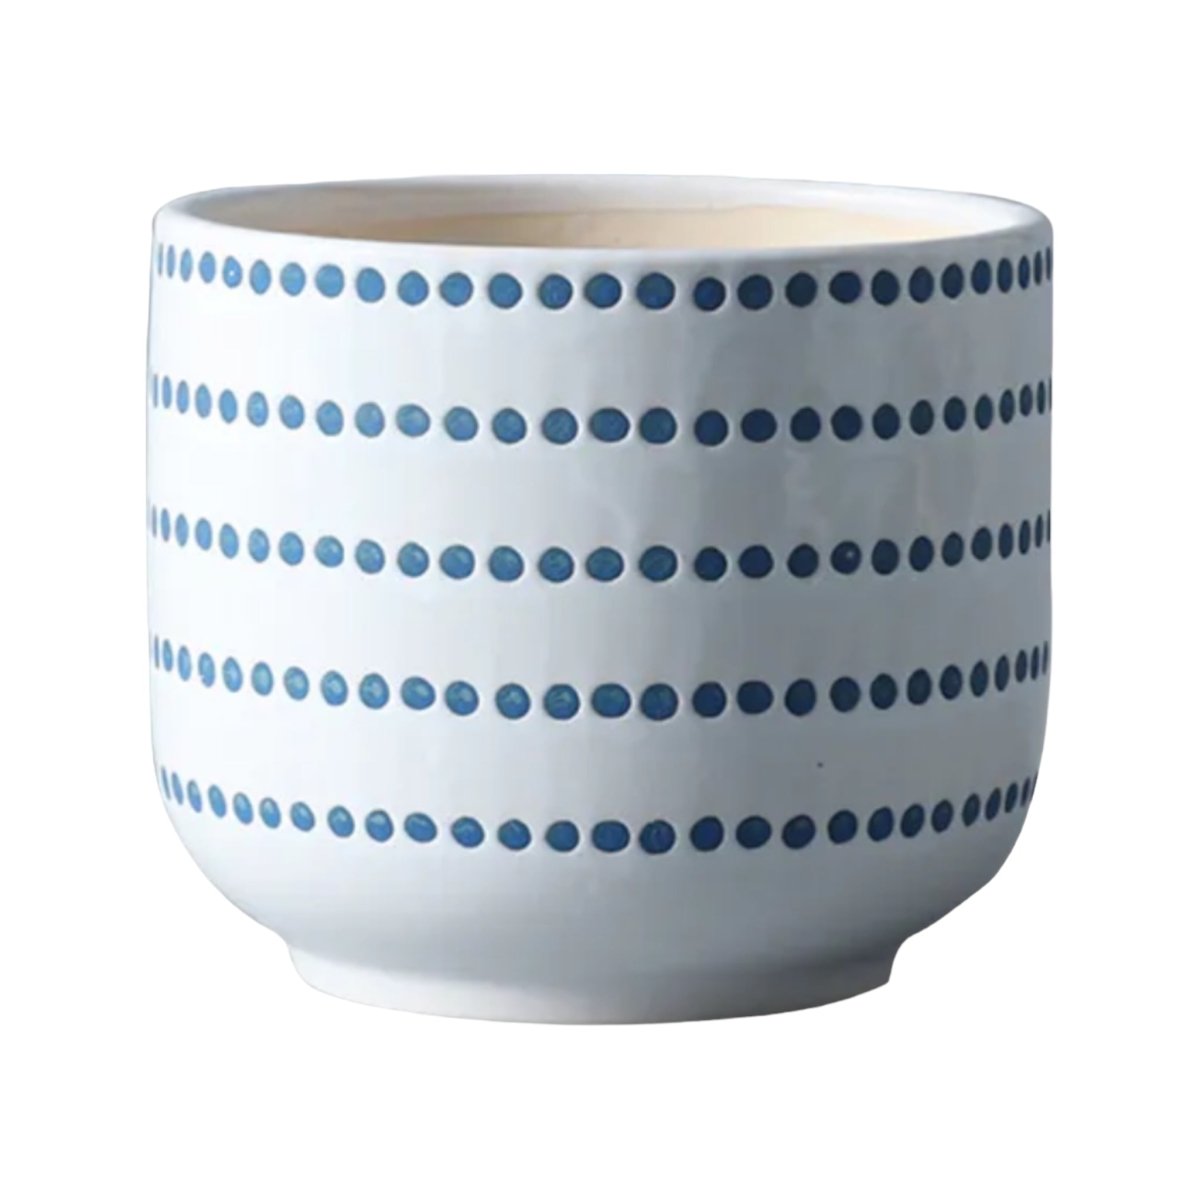 Keramik-Blumentopf, blau/weiß gepunktet, verschiedene Größen -KAKTOS